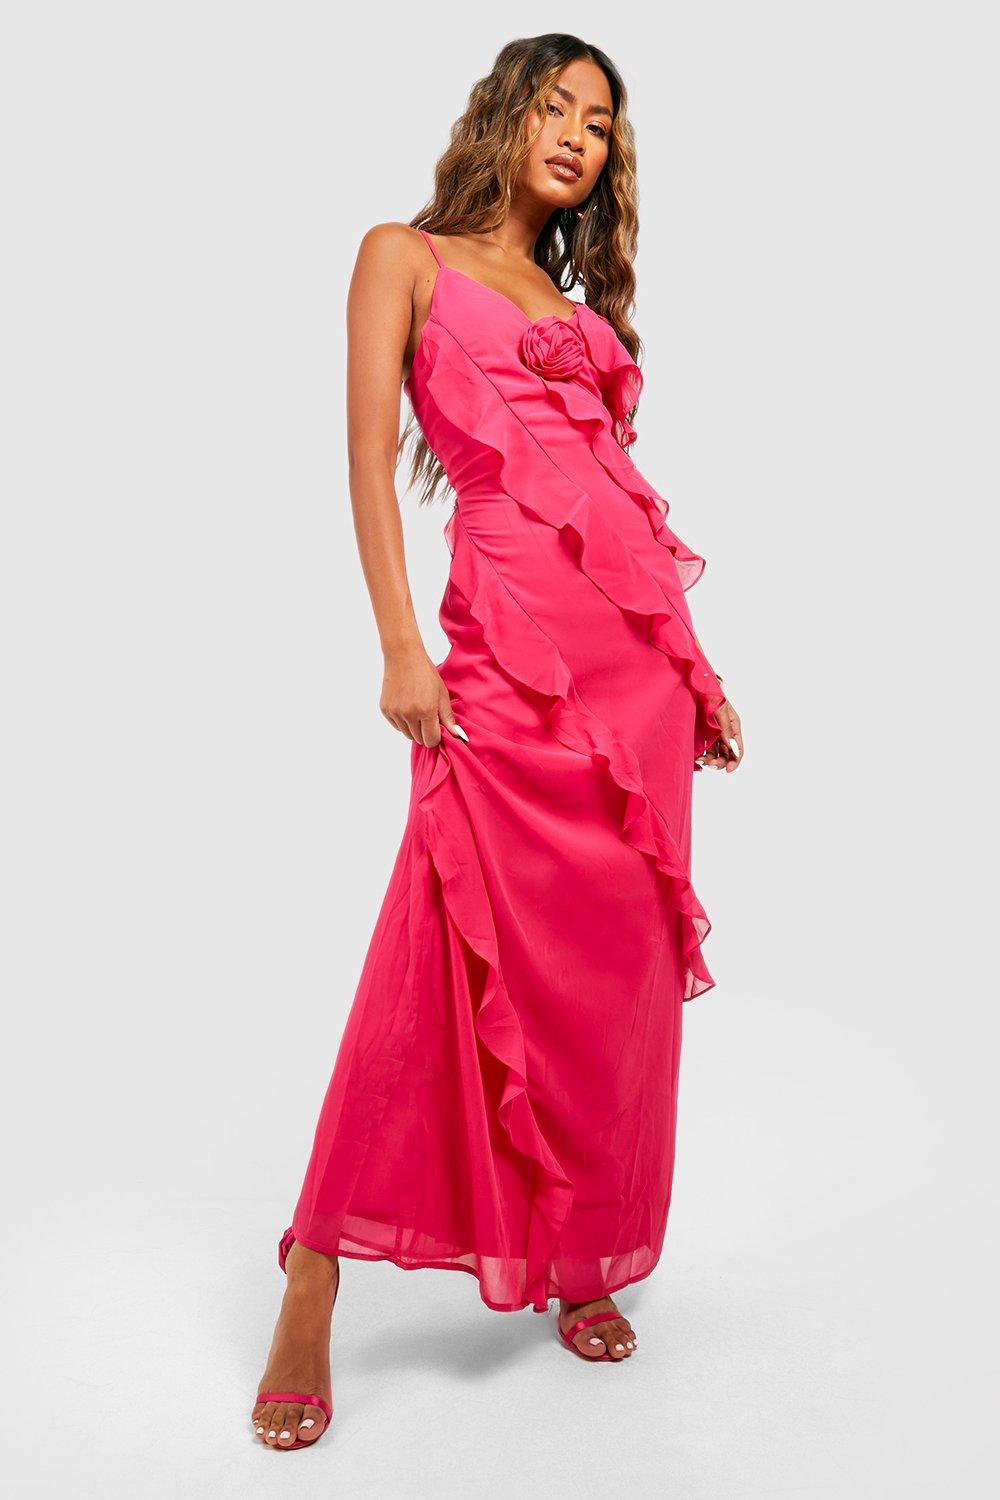 hot pink ruffle dress